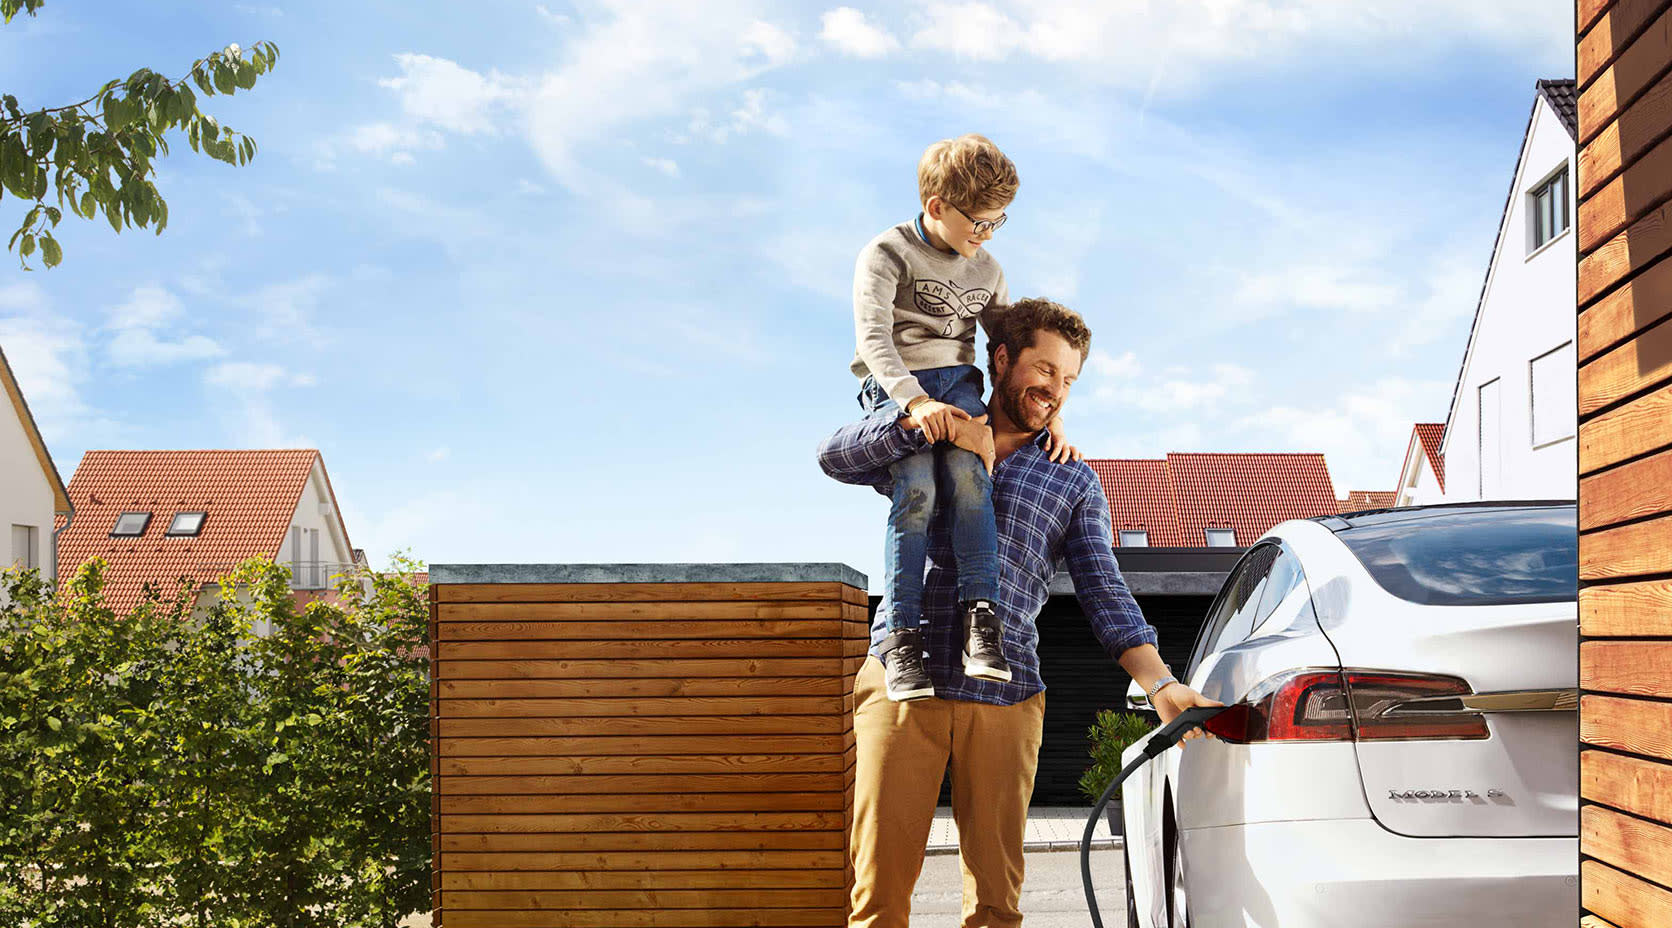 Mann mit Kind auf Schulter lädt E-Auto auf, EnBW mobility+ Wallbox im Vordergrund